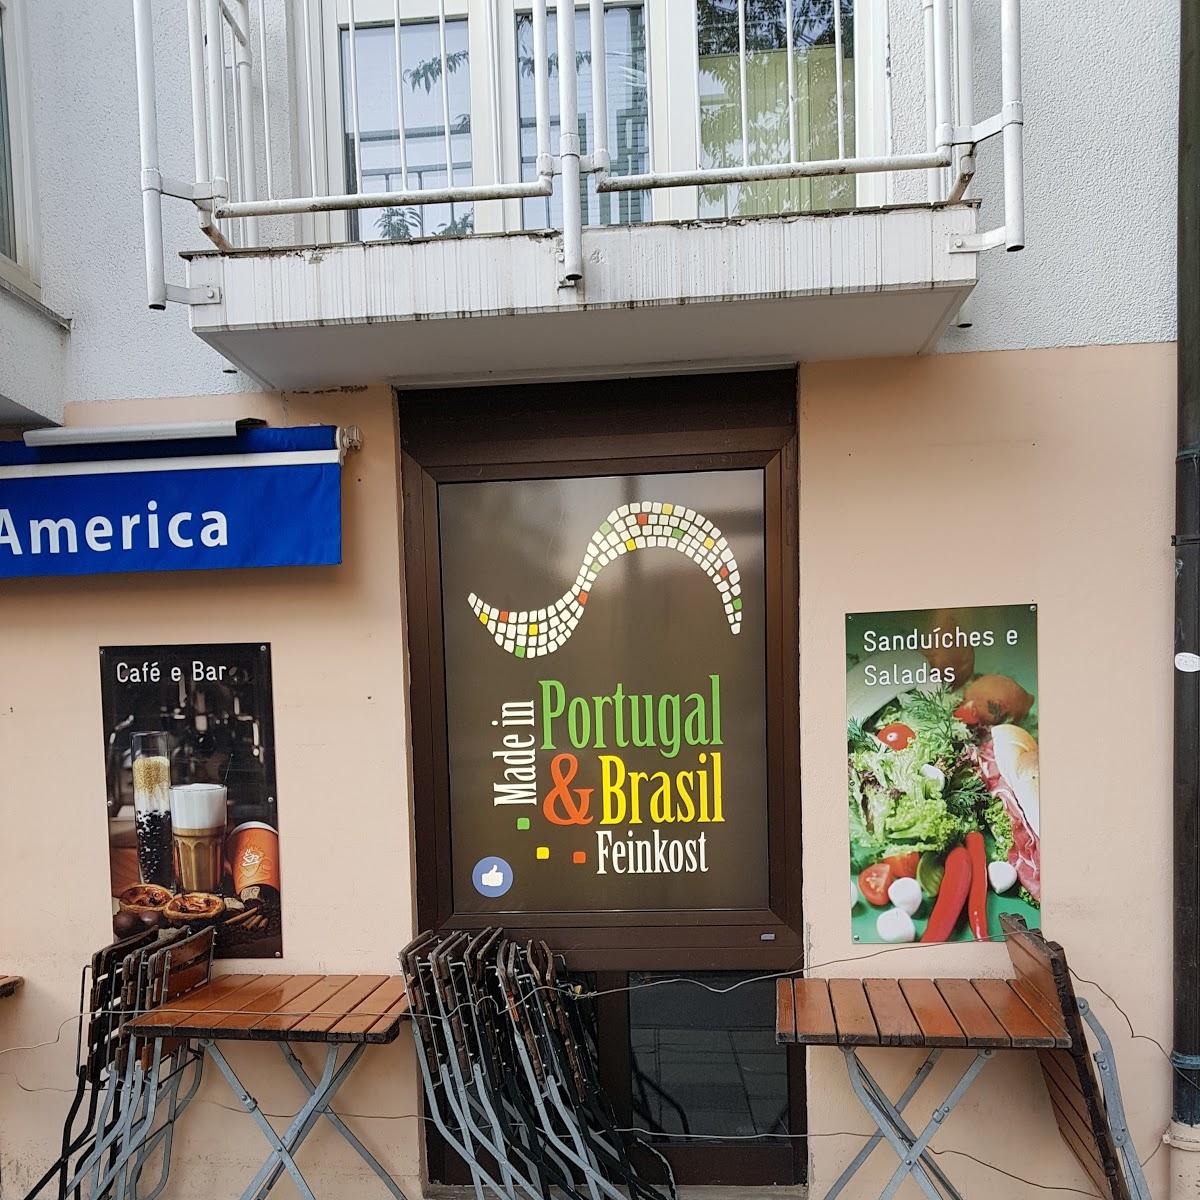 Restaurant "Made in Portugal & Brasil" in München